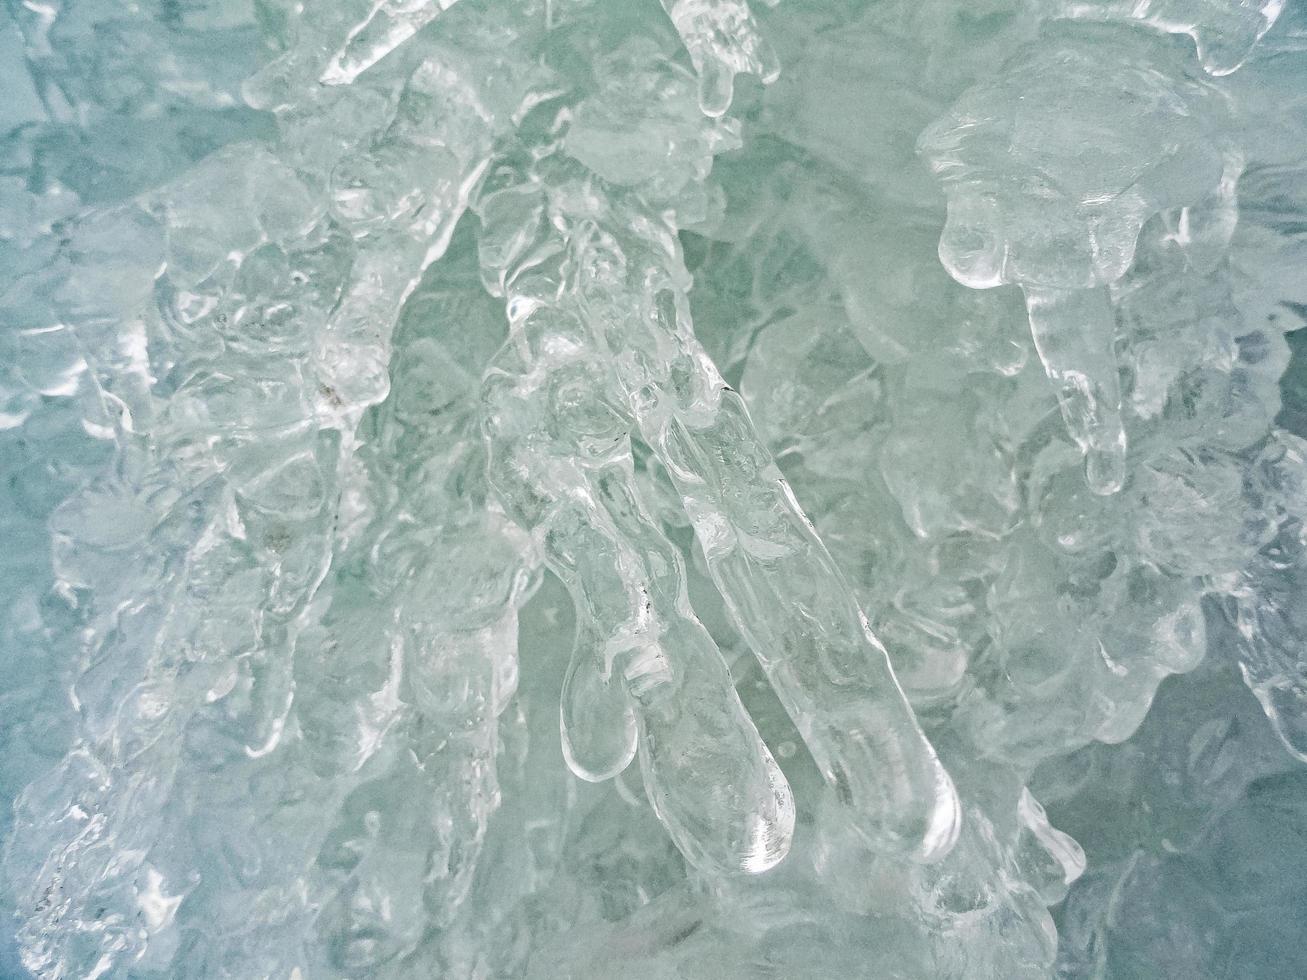 textuur macro-opname van turquoise blauwe bevroren waterval in noorwegen. foto